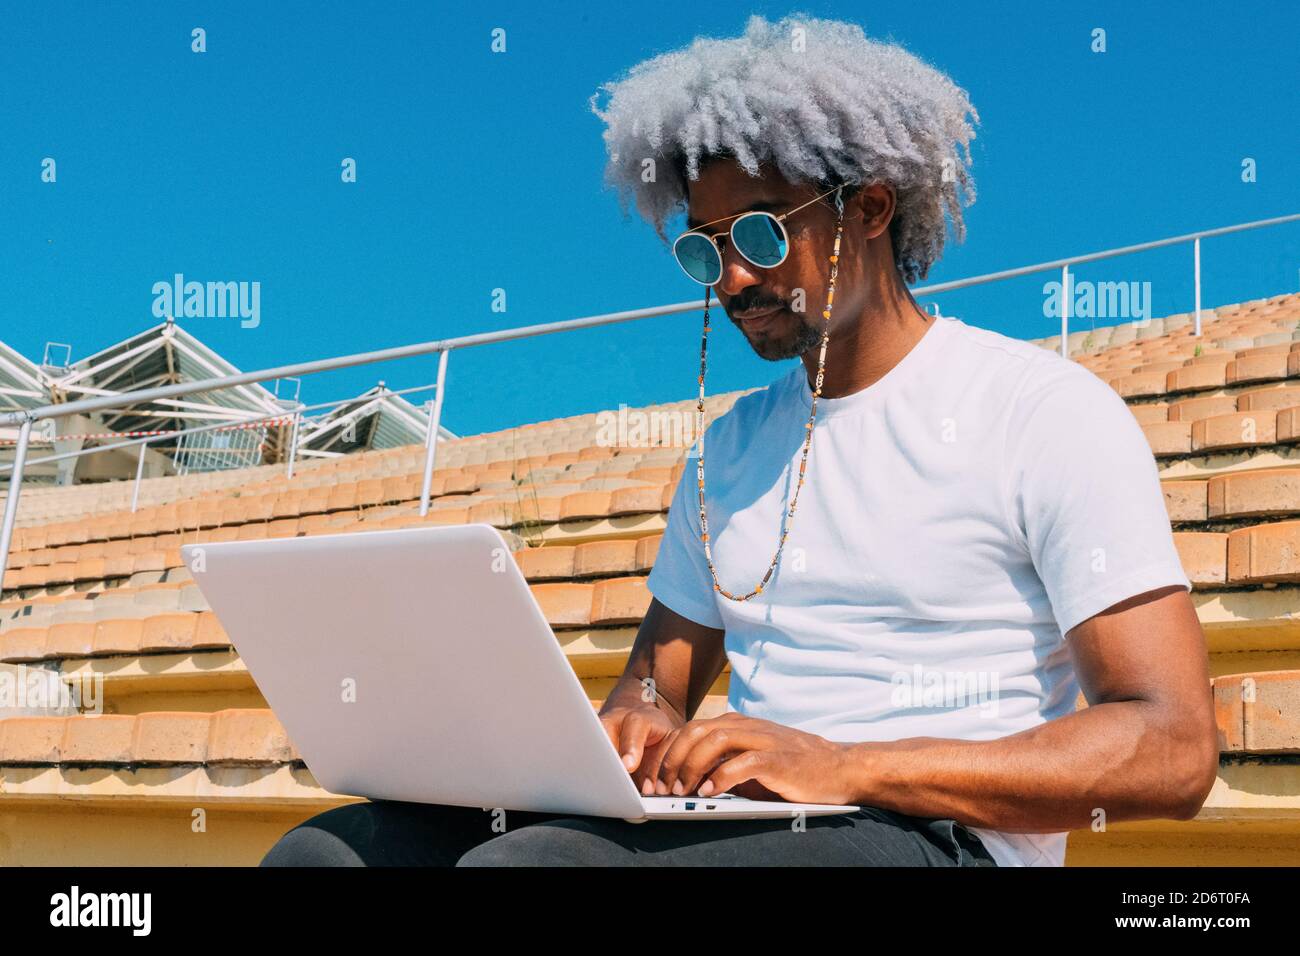 Afro et homme noir avec des lunettes de soleil travaillant avec son ordinateur portable dans la rue. Travailler avec l'ordinateur portable à l'extérieur. Homme noir travaillant sur l'ordinateur. Banque D'Images